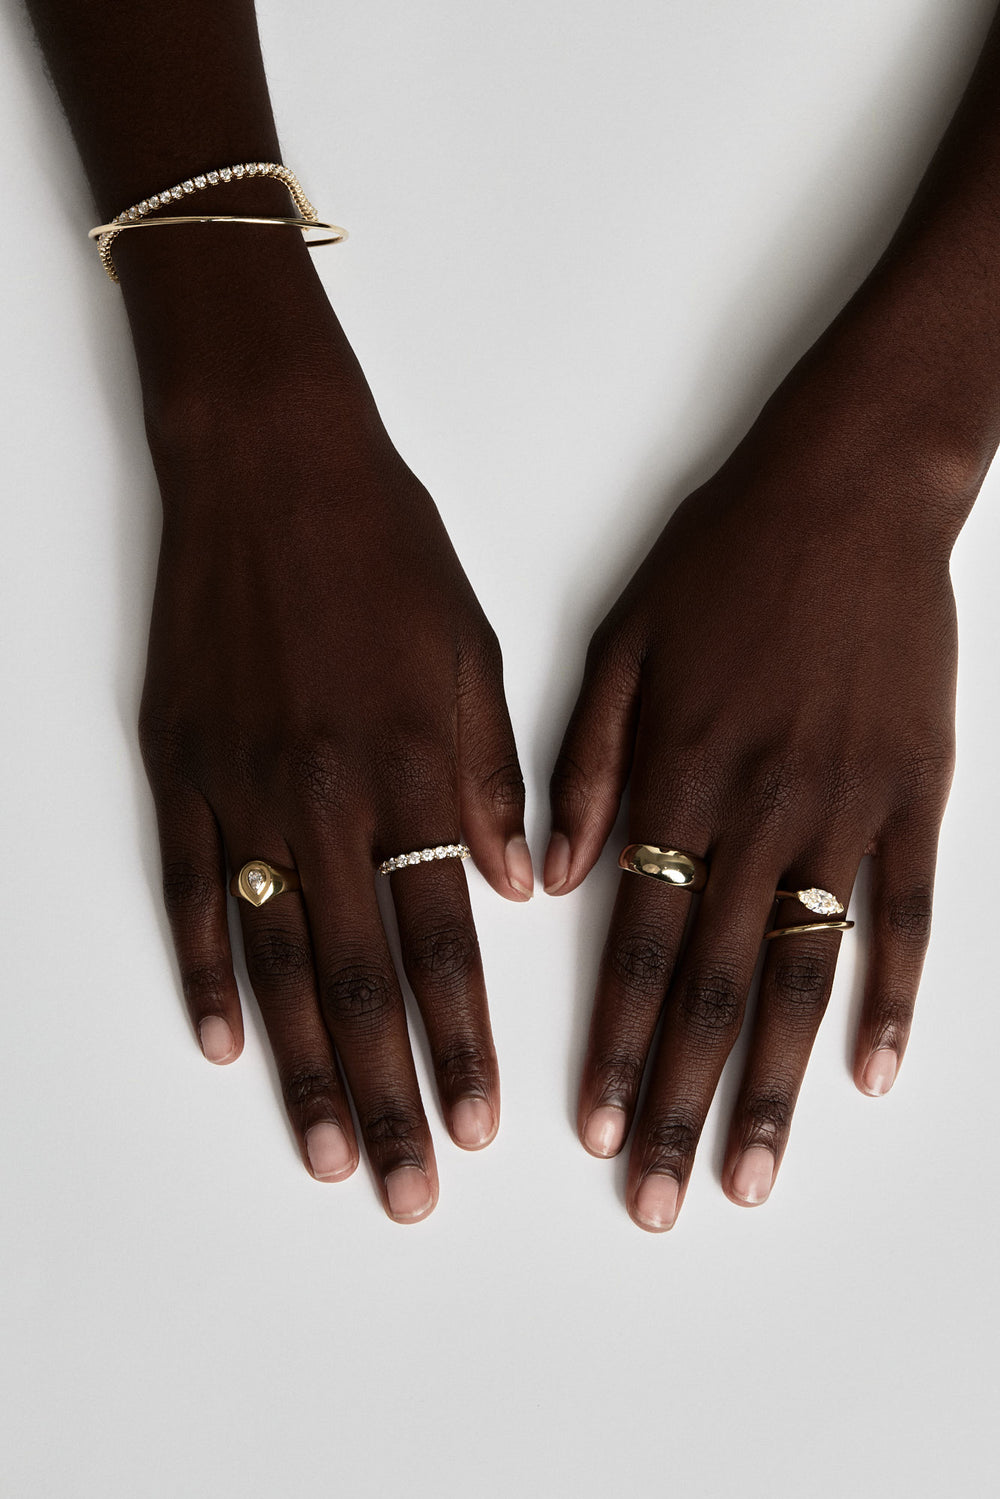 Natasha East West Marquise Diamond Wrap Ring | 18K Gold| Natasha Schweitzer